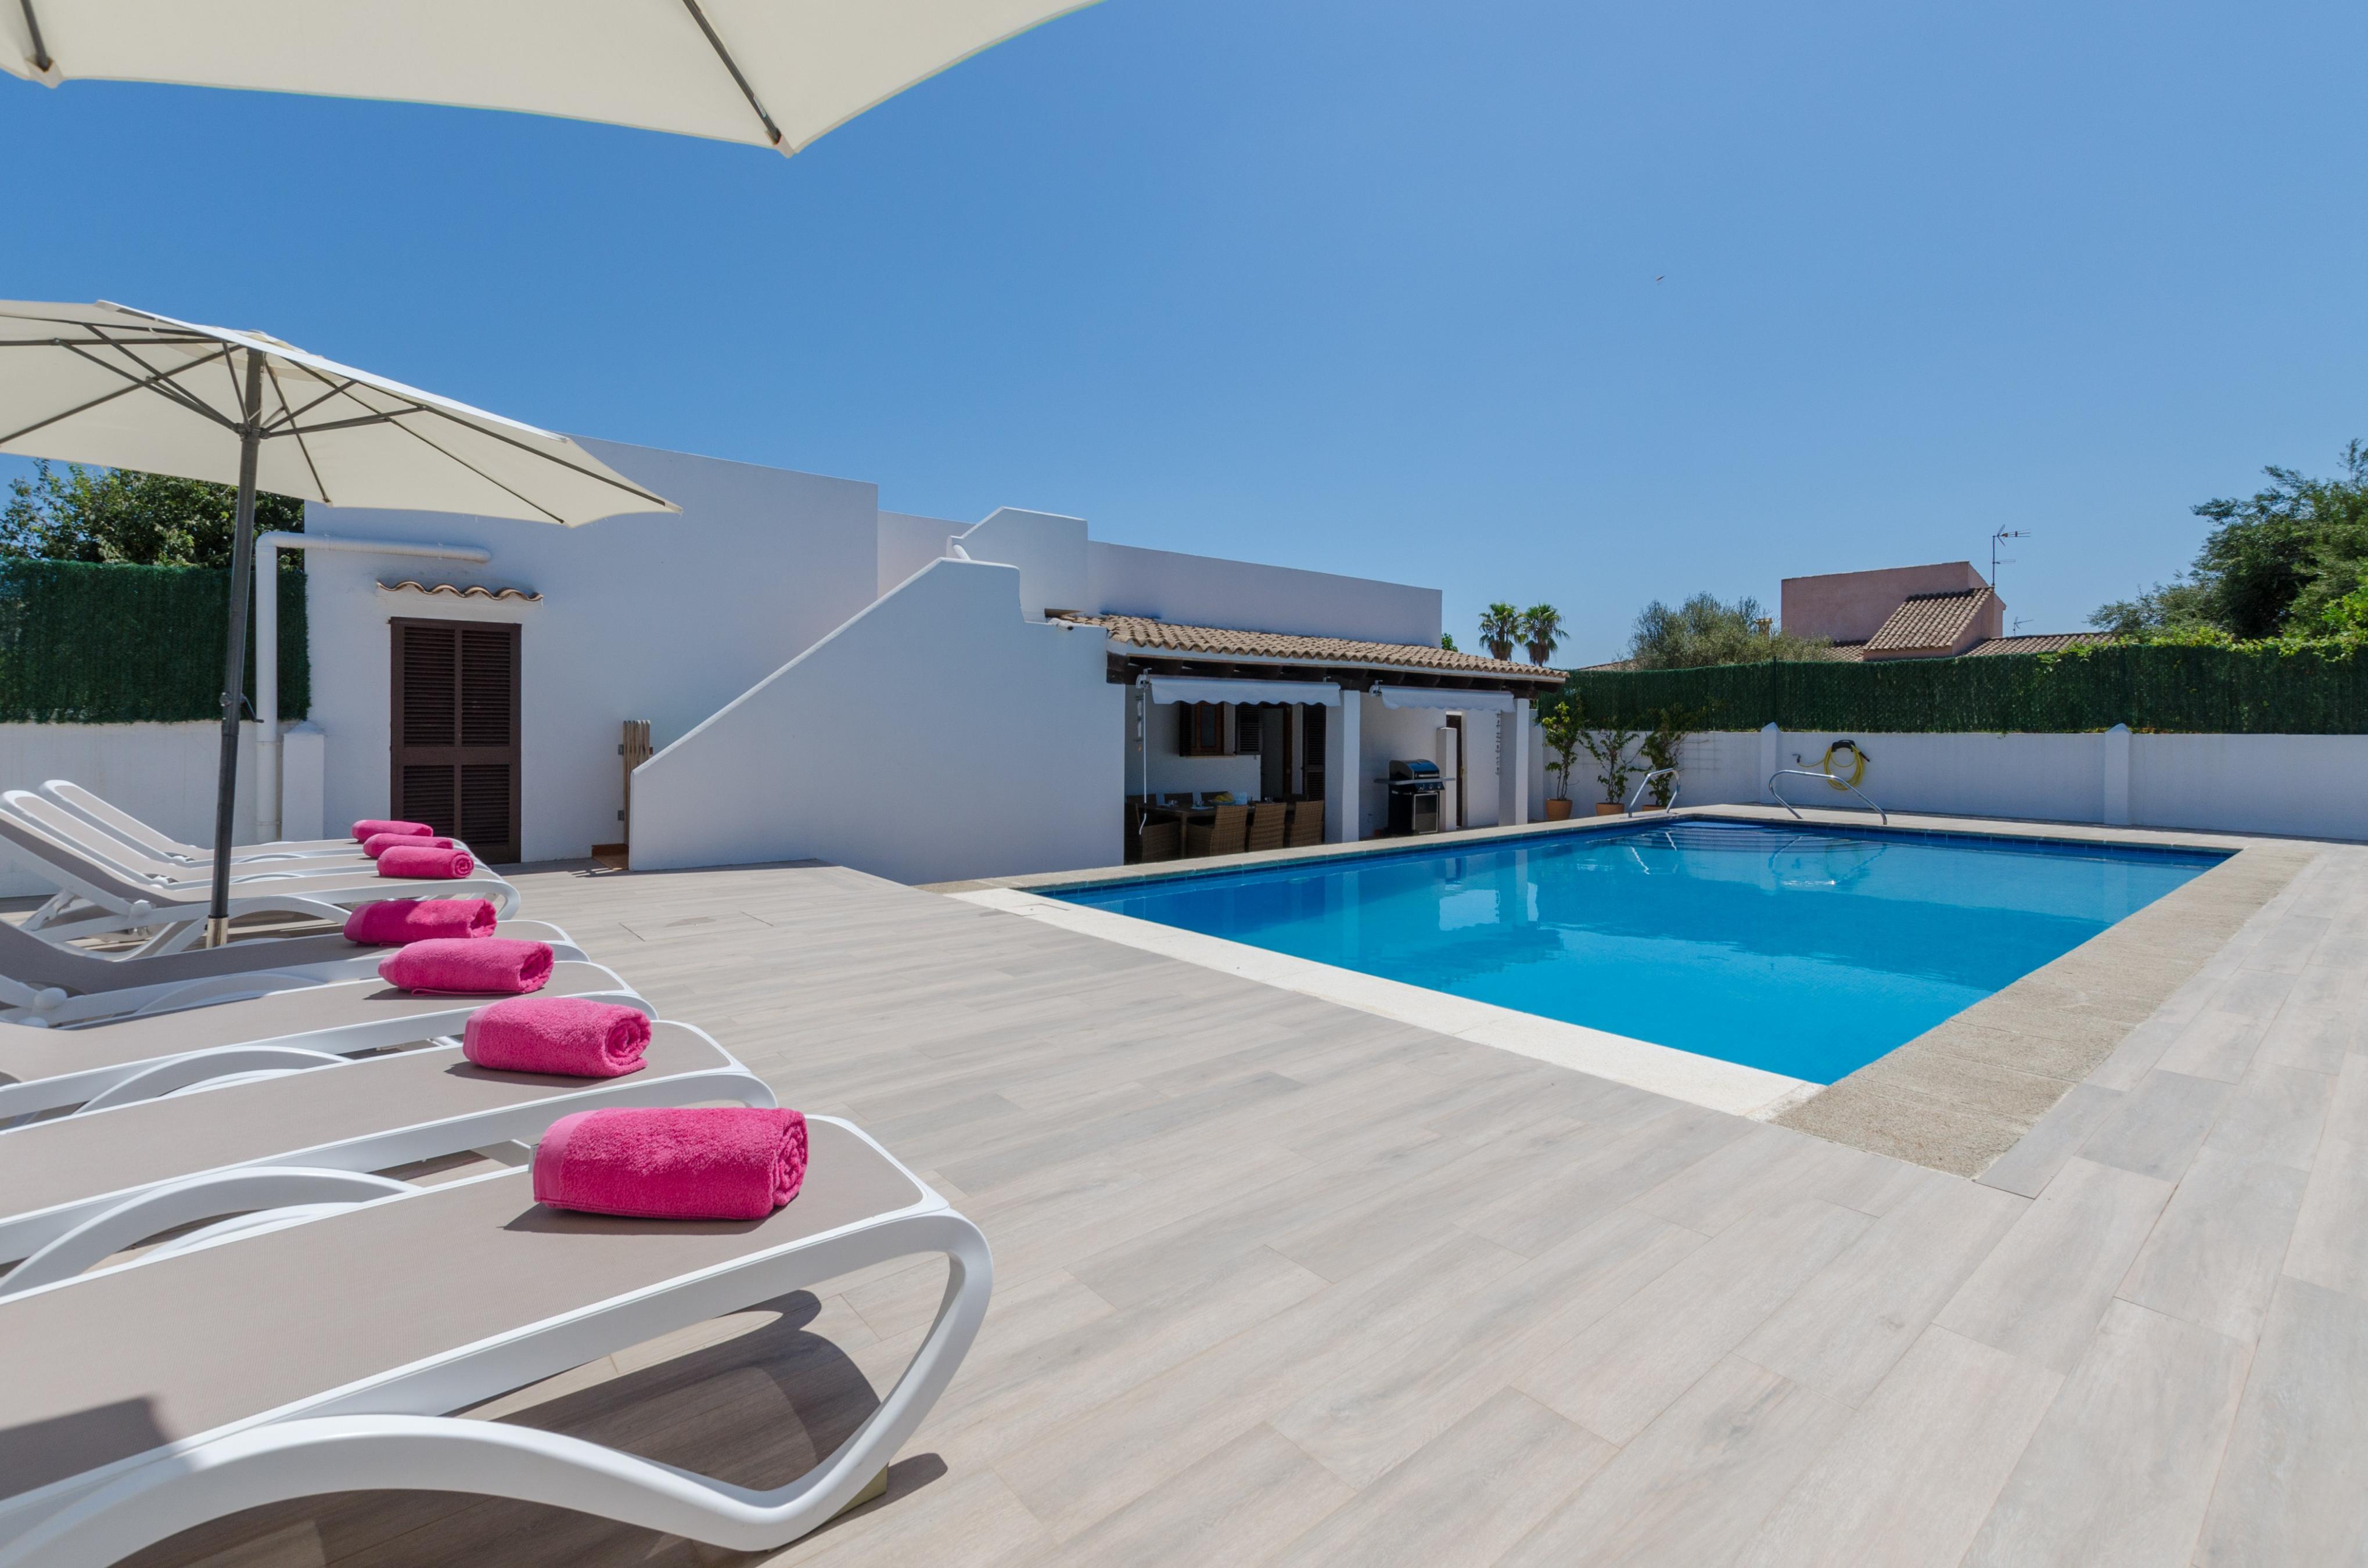 Property Image 2 - MURTA 26 - Villa with private pool in SA COMA. Free WiFi